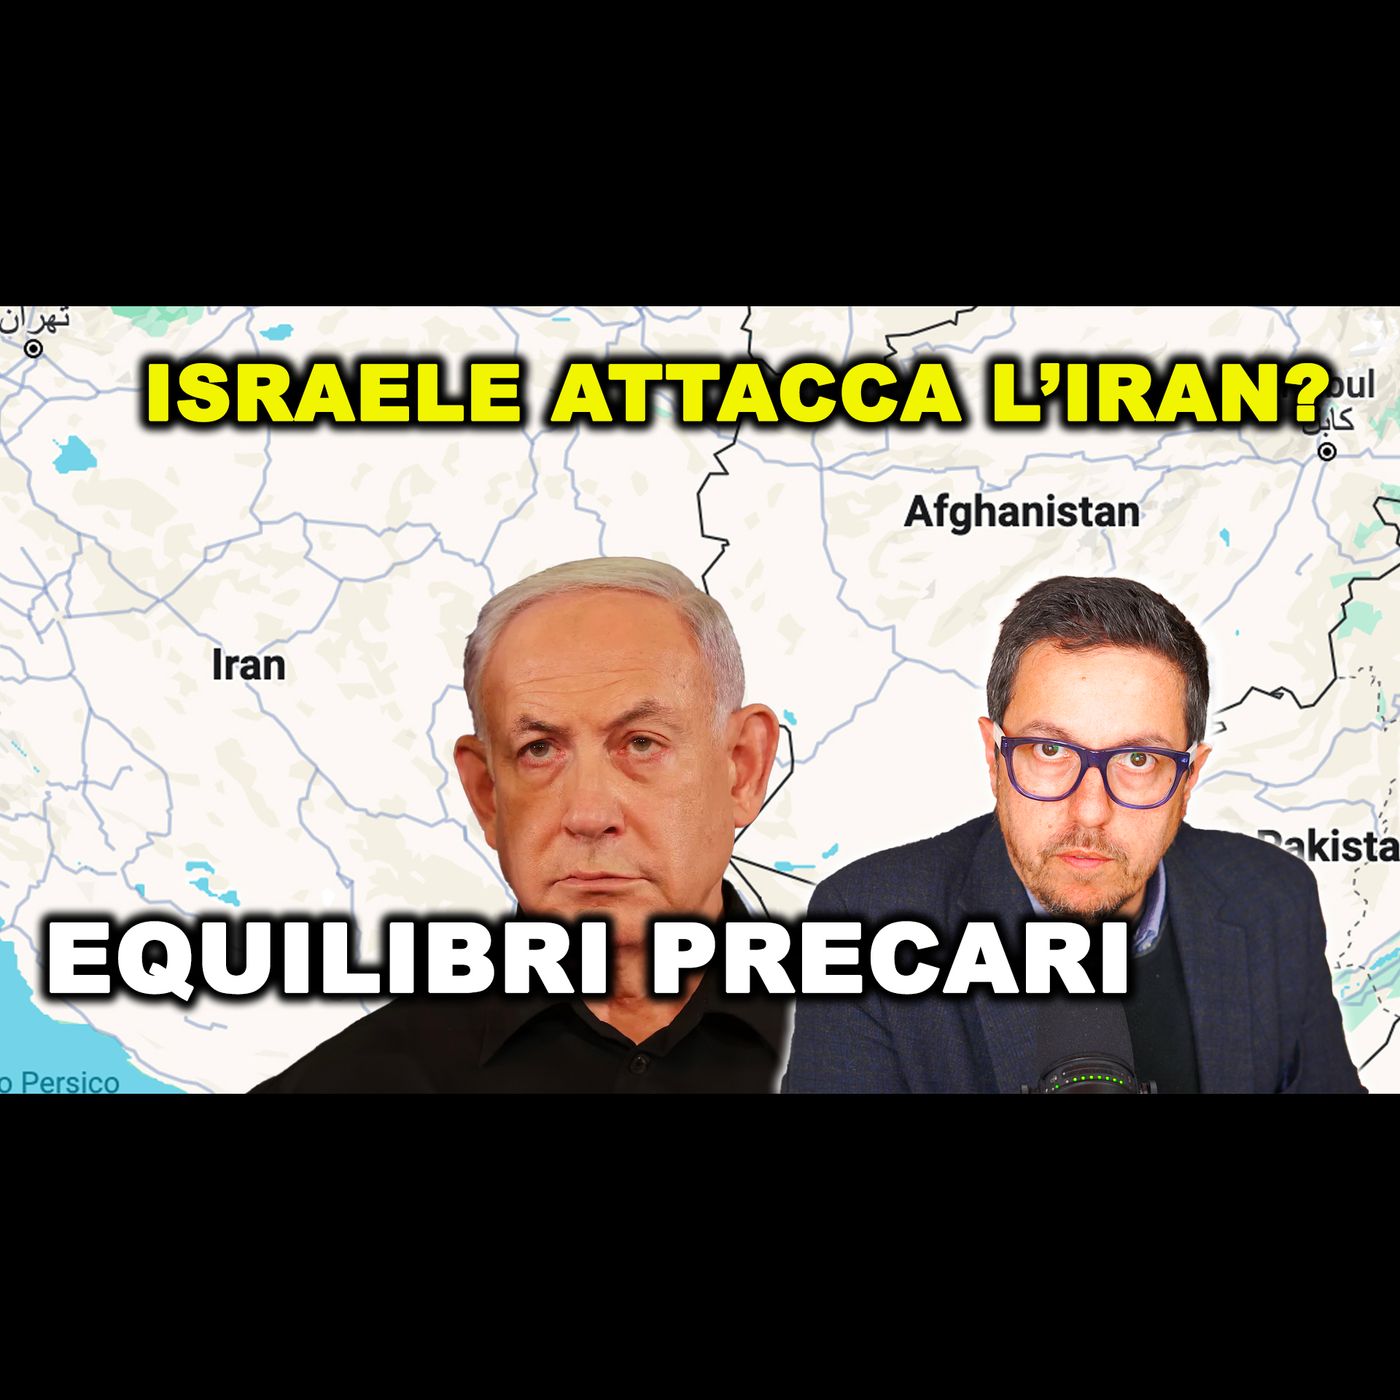 Attacco di ISRAELE in IRAN? Oppure no? Gli USA smentendo confermano